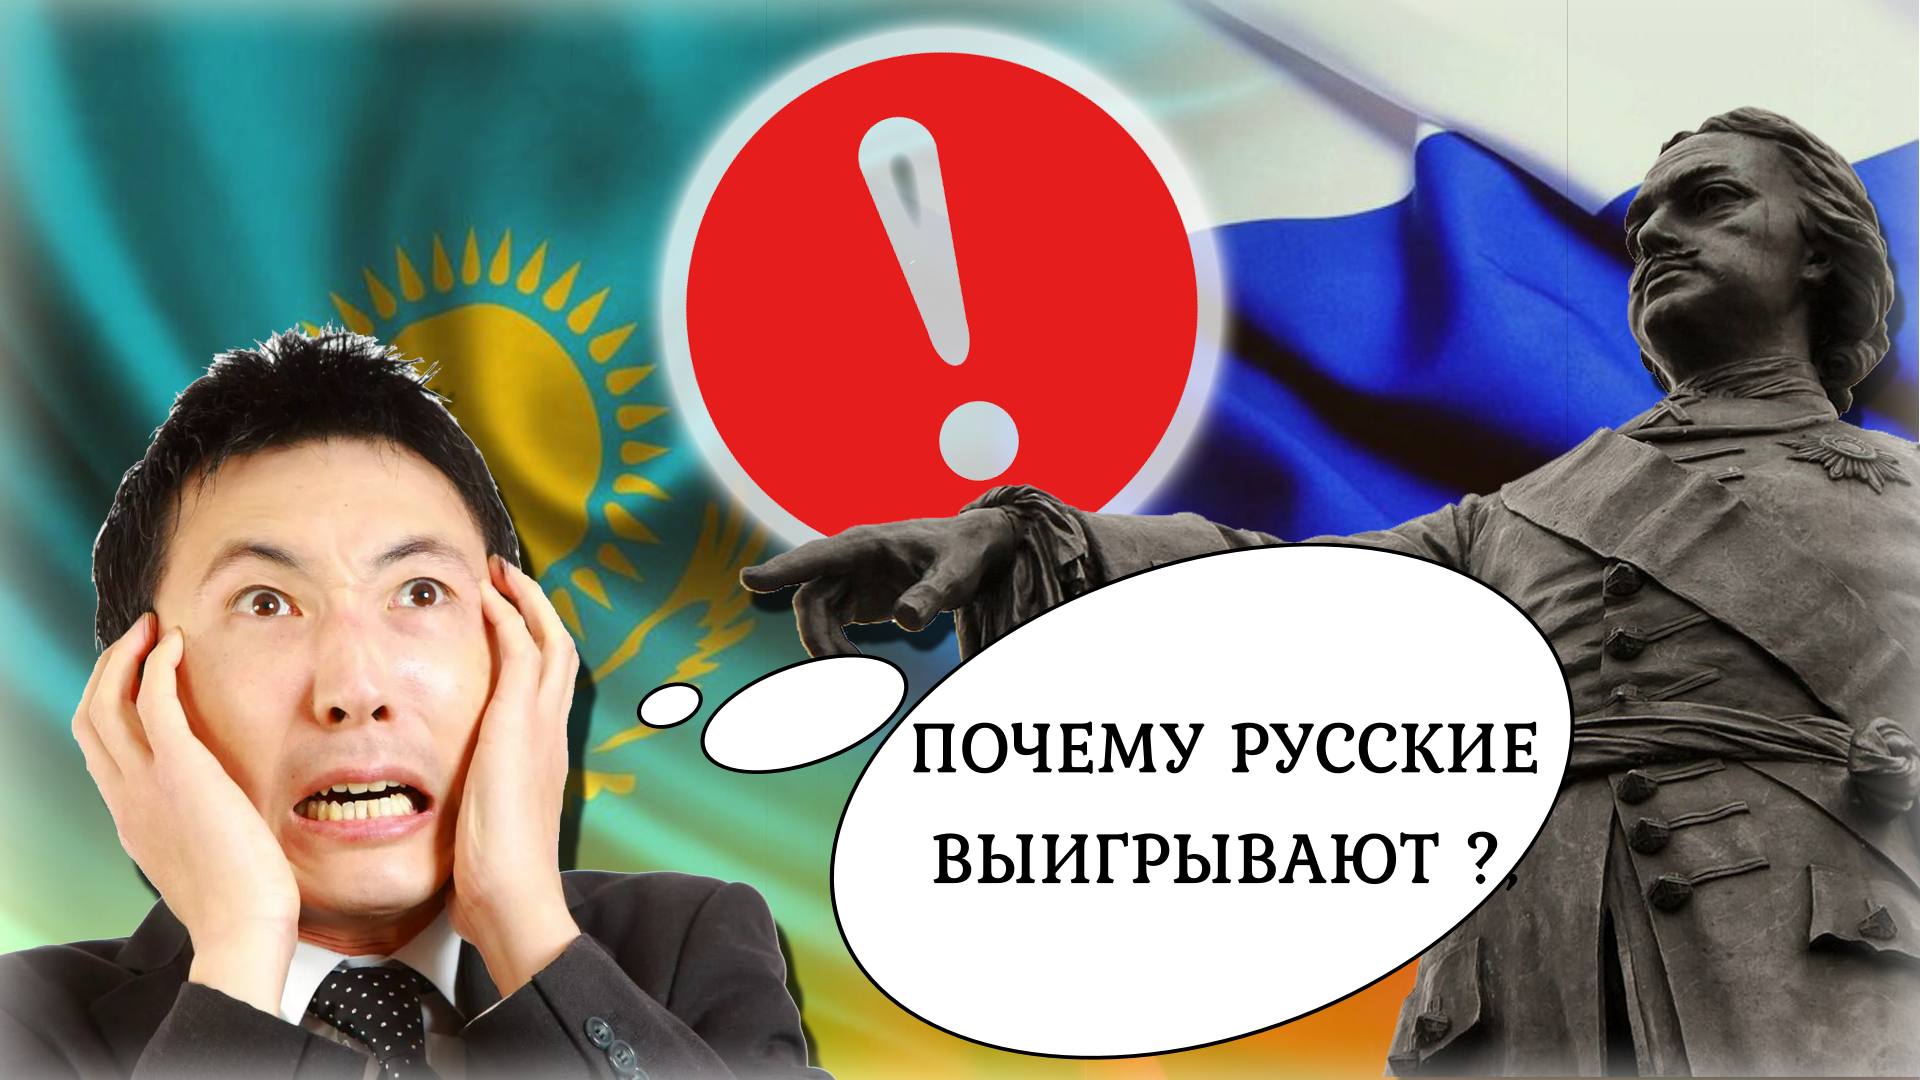 Решается судьба Казахстана ⛔️ "ЧЕМ ХОРОШИ РУССКИЕ" Откровенный расклад, что творится в стране